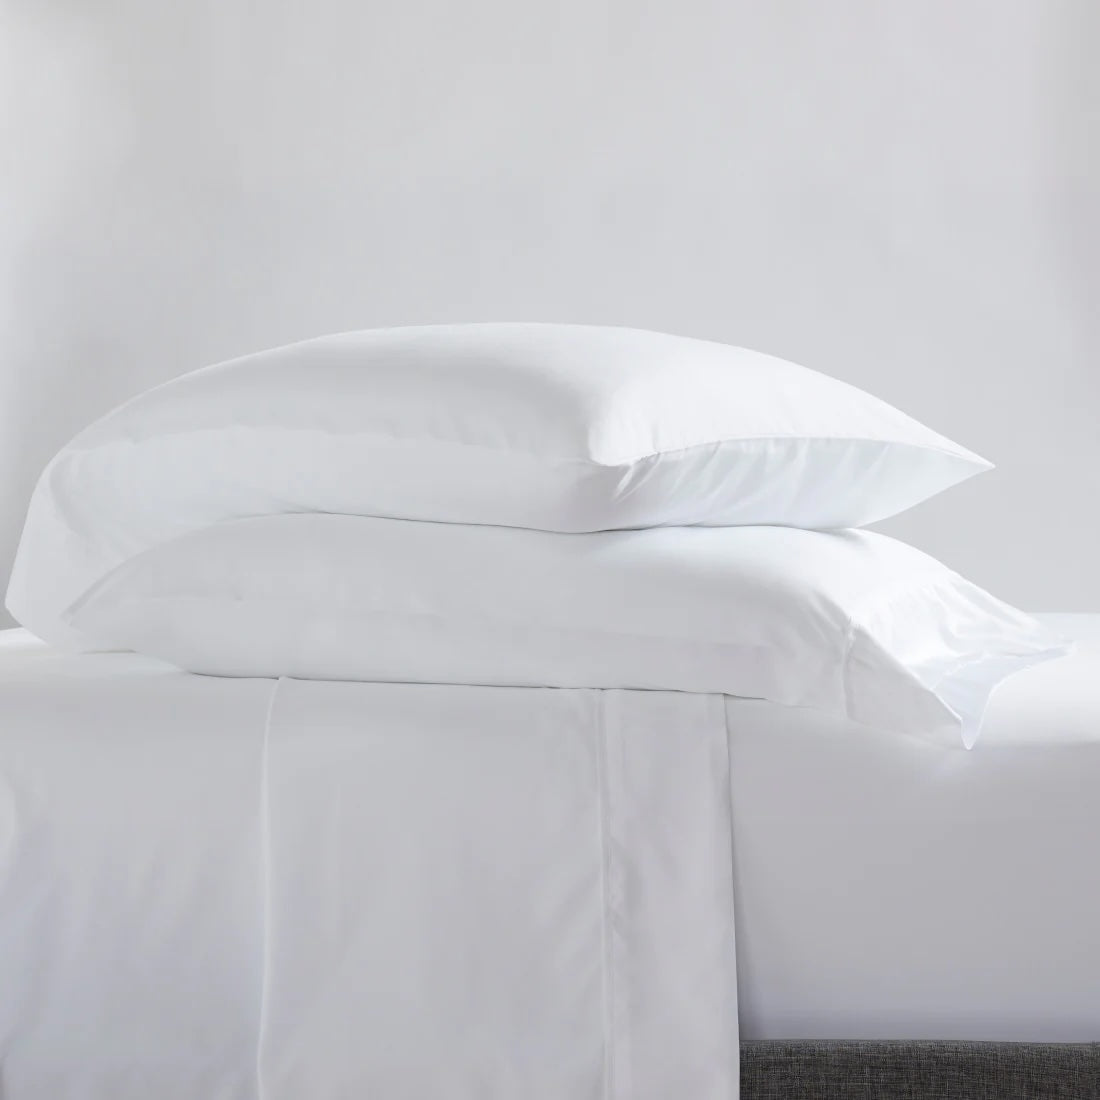 Serta 舒達 Classic Bundle 枕頭、保護套、床單套裝 (平行進口)